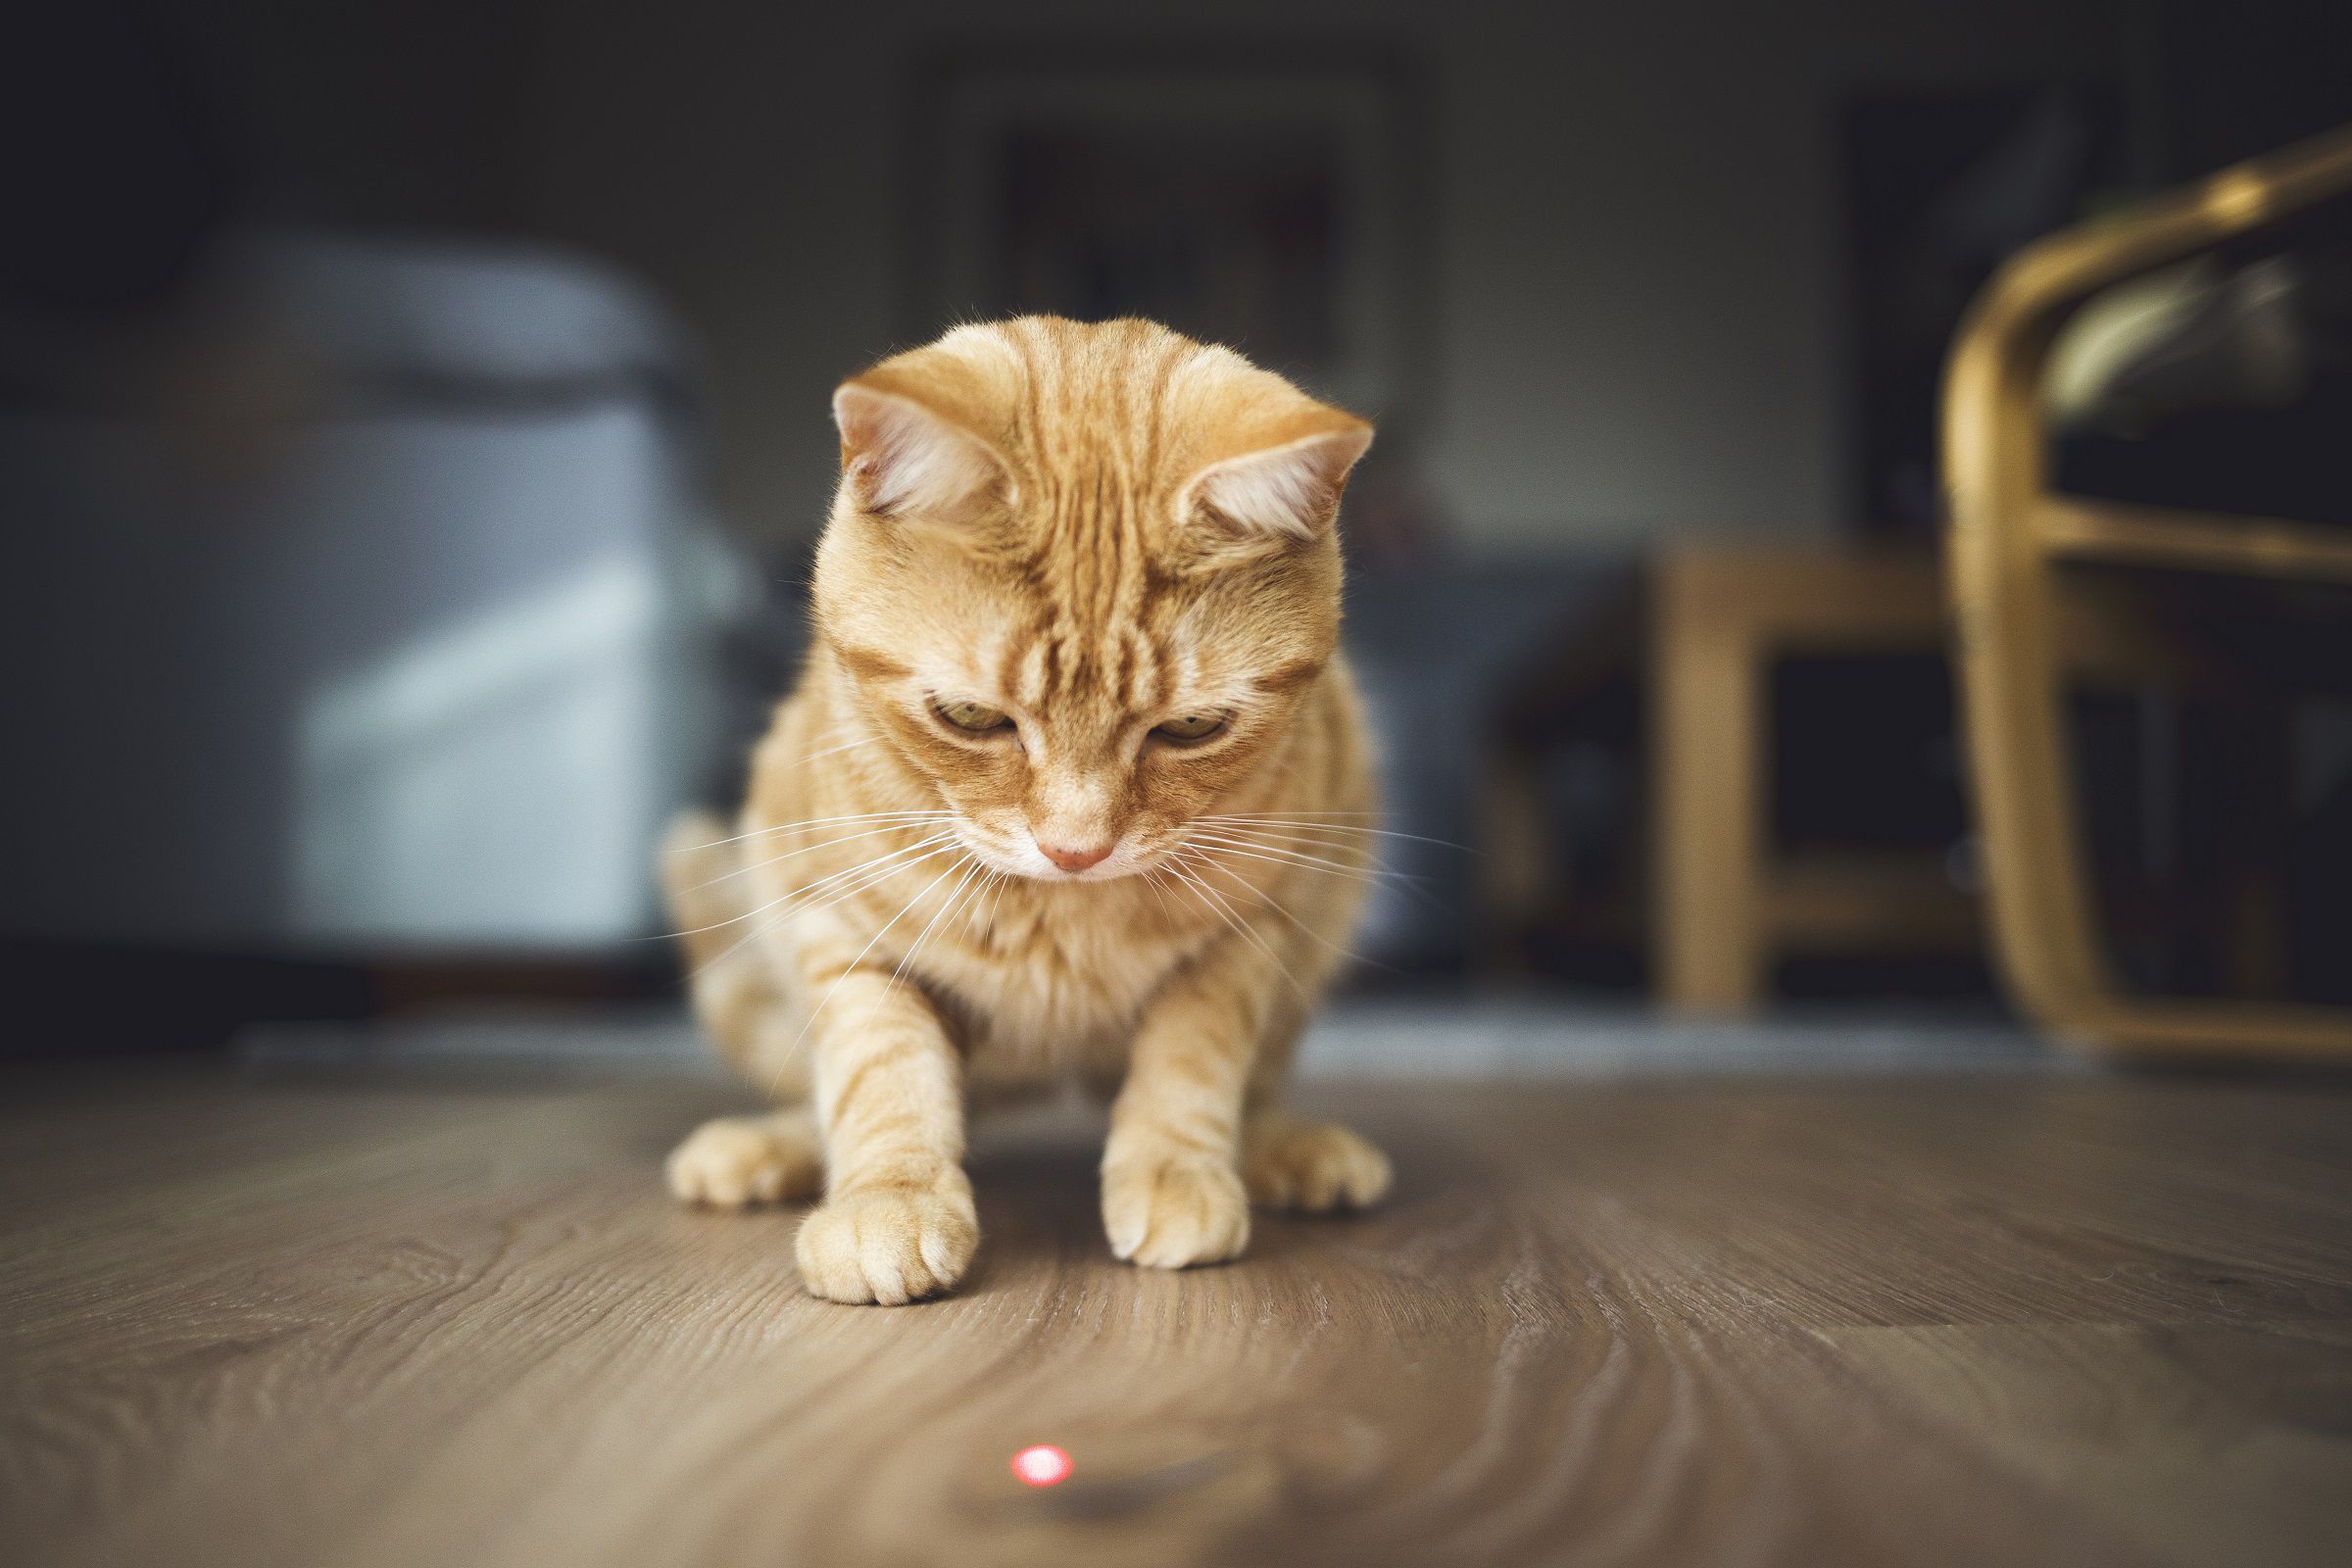 Кот с указкой. Котята играются. Котик с лазером. Лазерная указка для кота. Играющий кот.